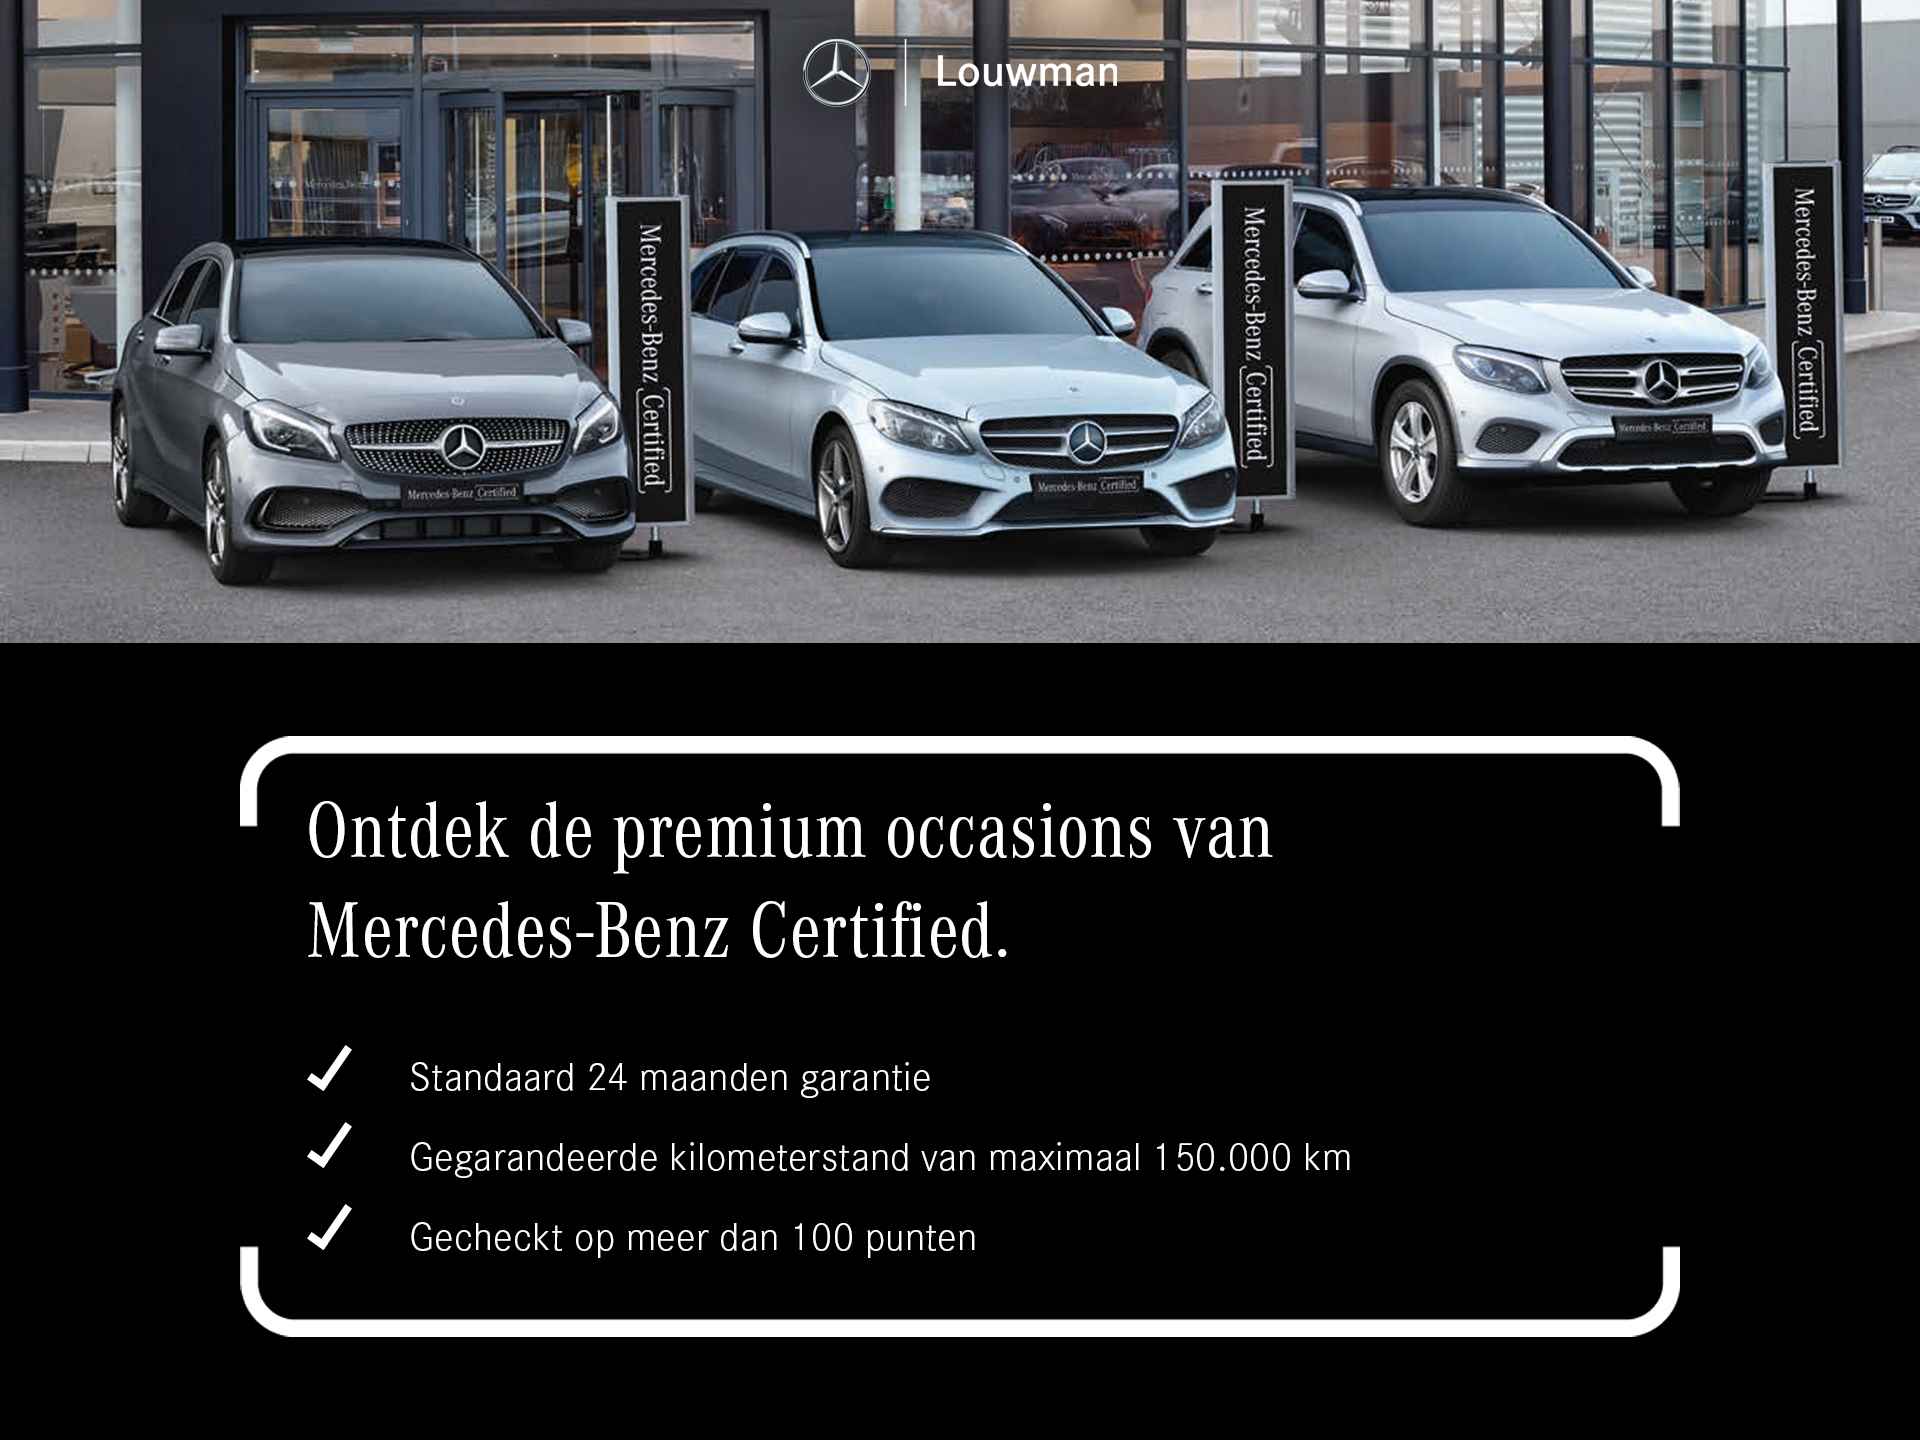 Mercedes-Benz GLC Coupé 63 S AMG 4MATIC+ Premium Plus | V8 | 510 pk | Keramische remmen | AMG performance-stoelen | Performance pakket | Inclusief 24 maanden Mercedes-Benz Certified garantie voor Europa. - 47/48